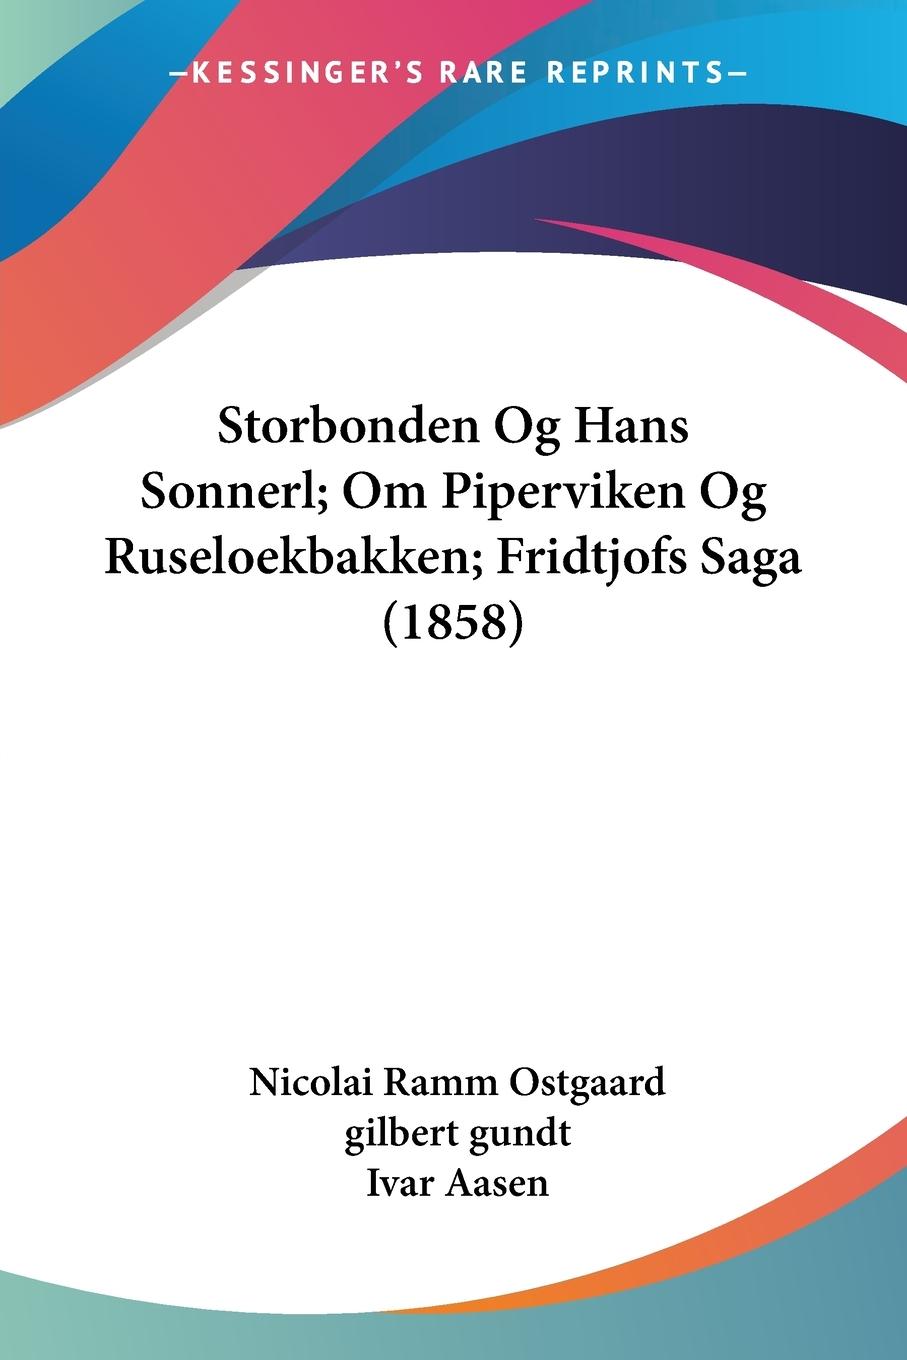 Storbonden Og Hans Sonnerl; Om Piperviken Og Ruseloekbakken; Fridtjofs Saga (1858) - Ostgaard, Nicolai Ramm Gundt, Gilbert Aasen, Ivar